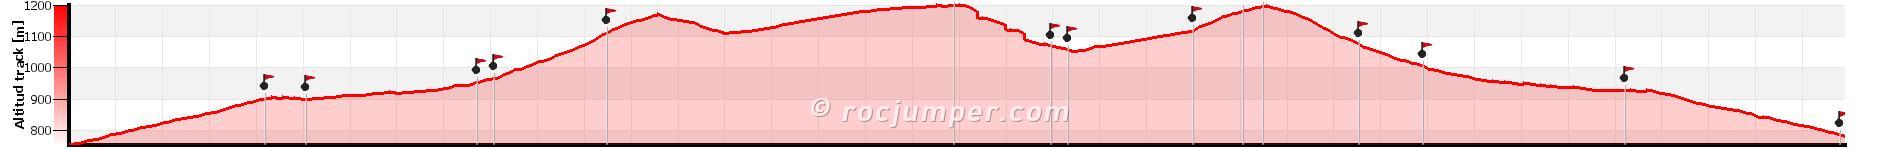 Altimetría - Torrent de Muiols - Campdevànol - RocJumper